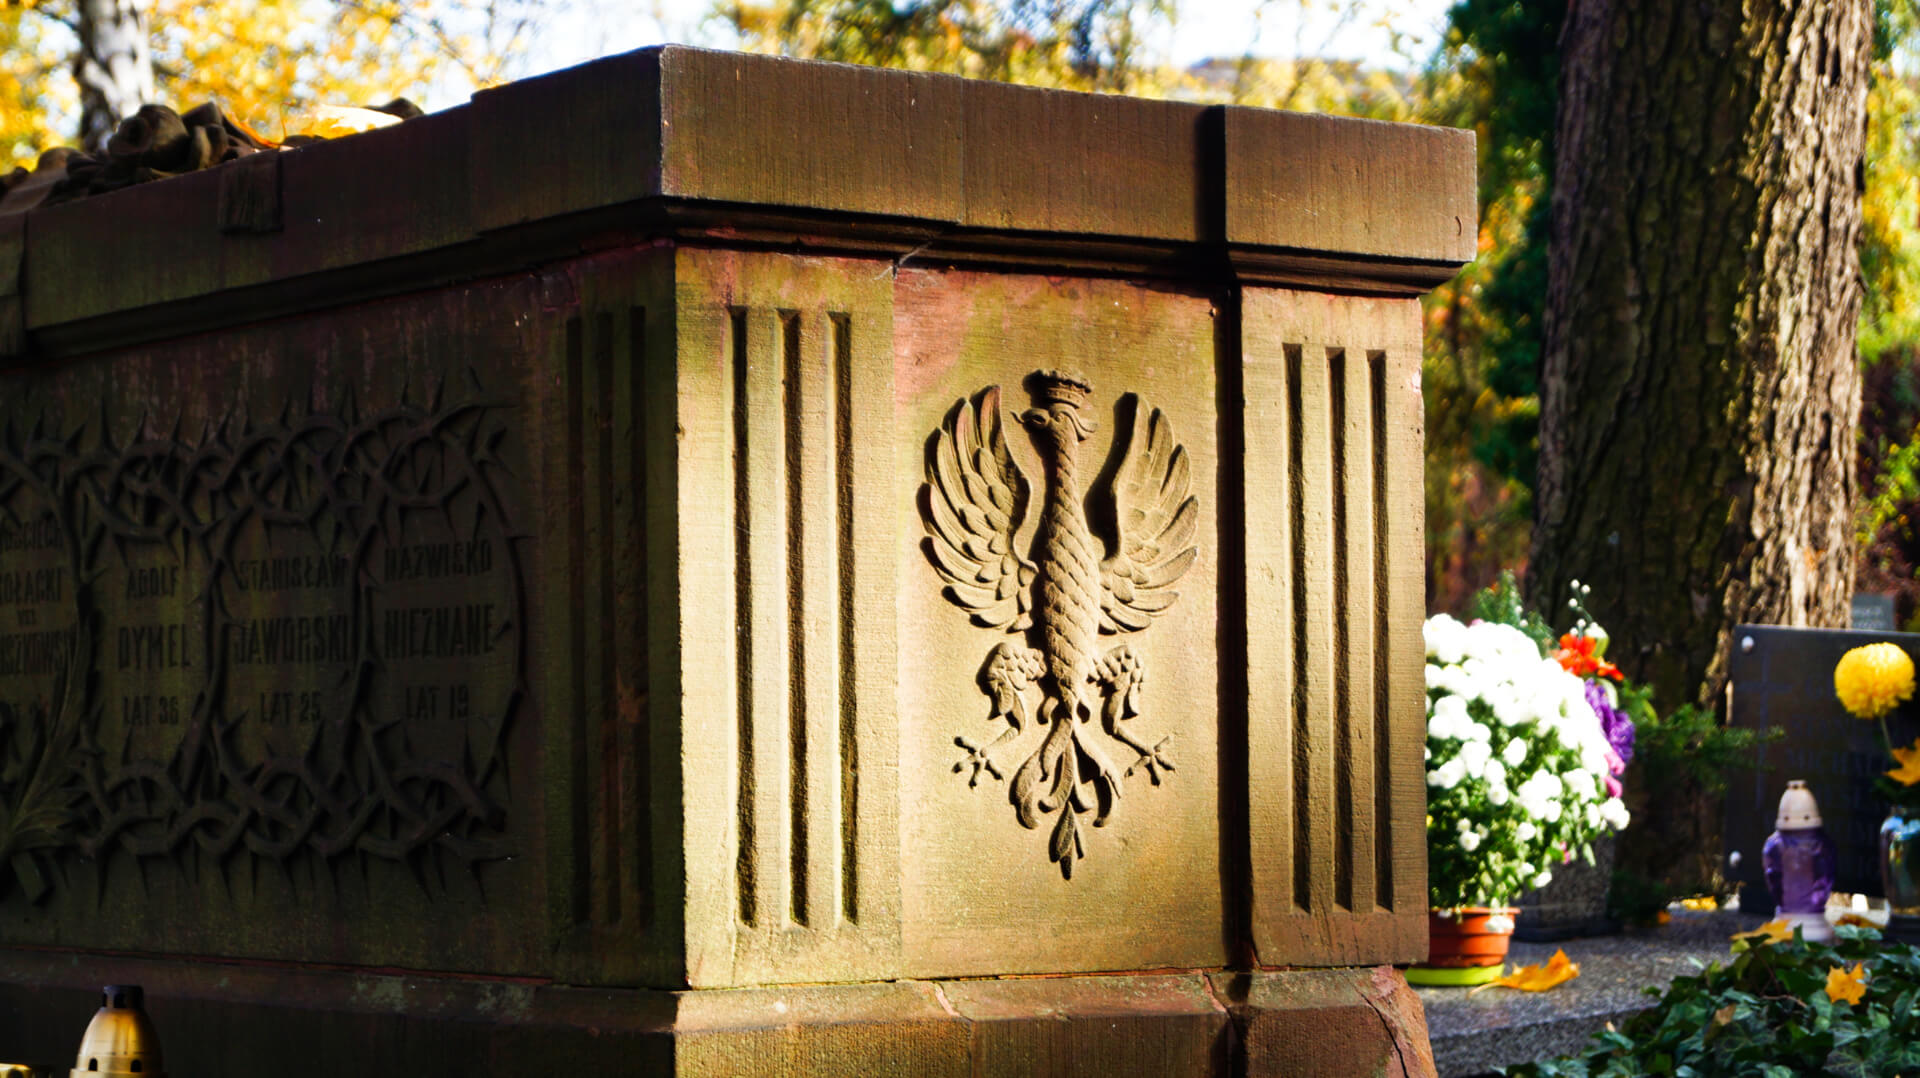 Pomniki na cmentarzu w Łodzi – cmenatrz przy ogrodowej – pomniki